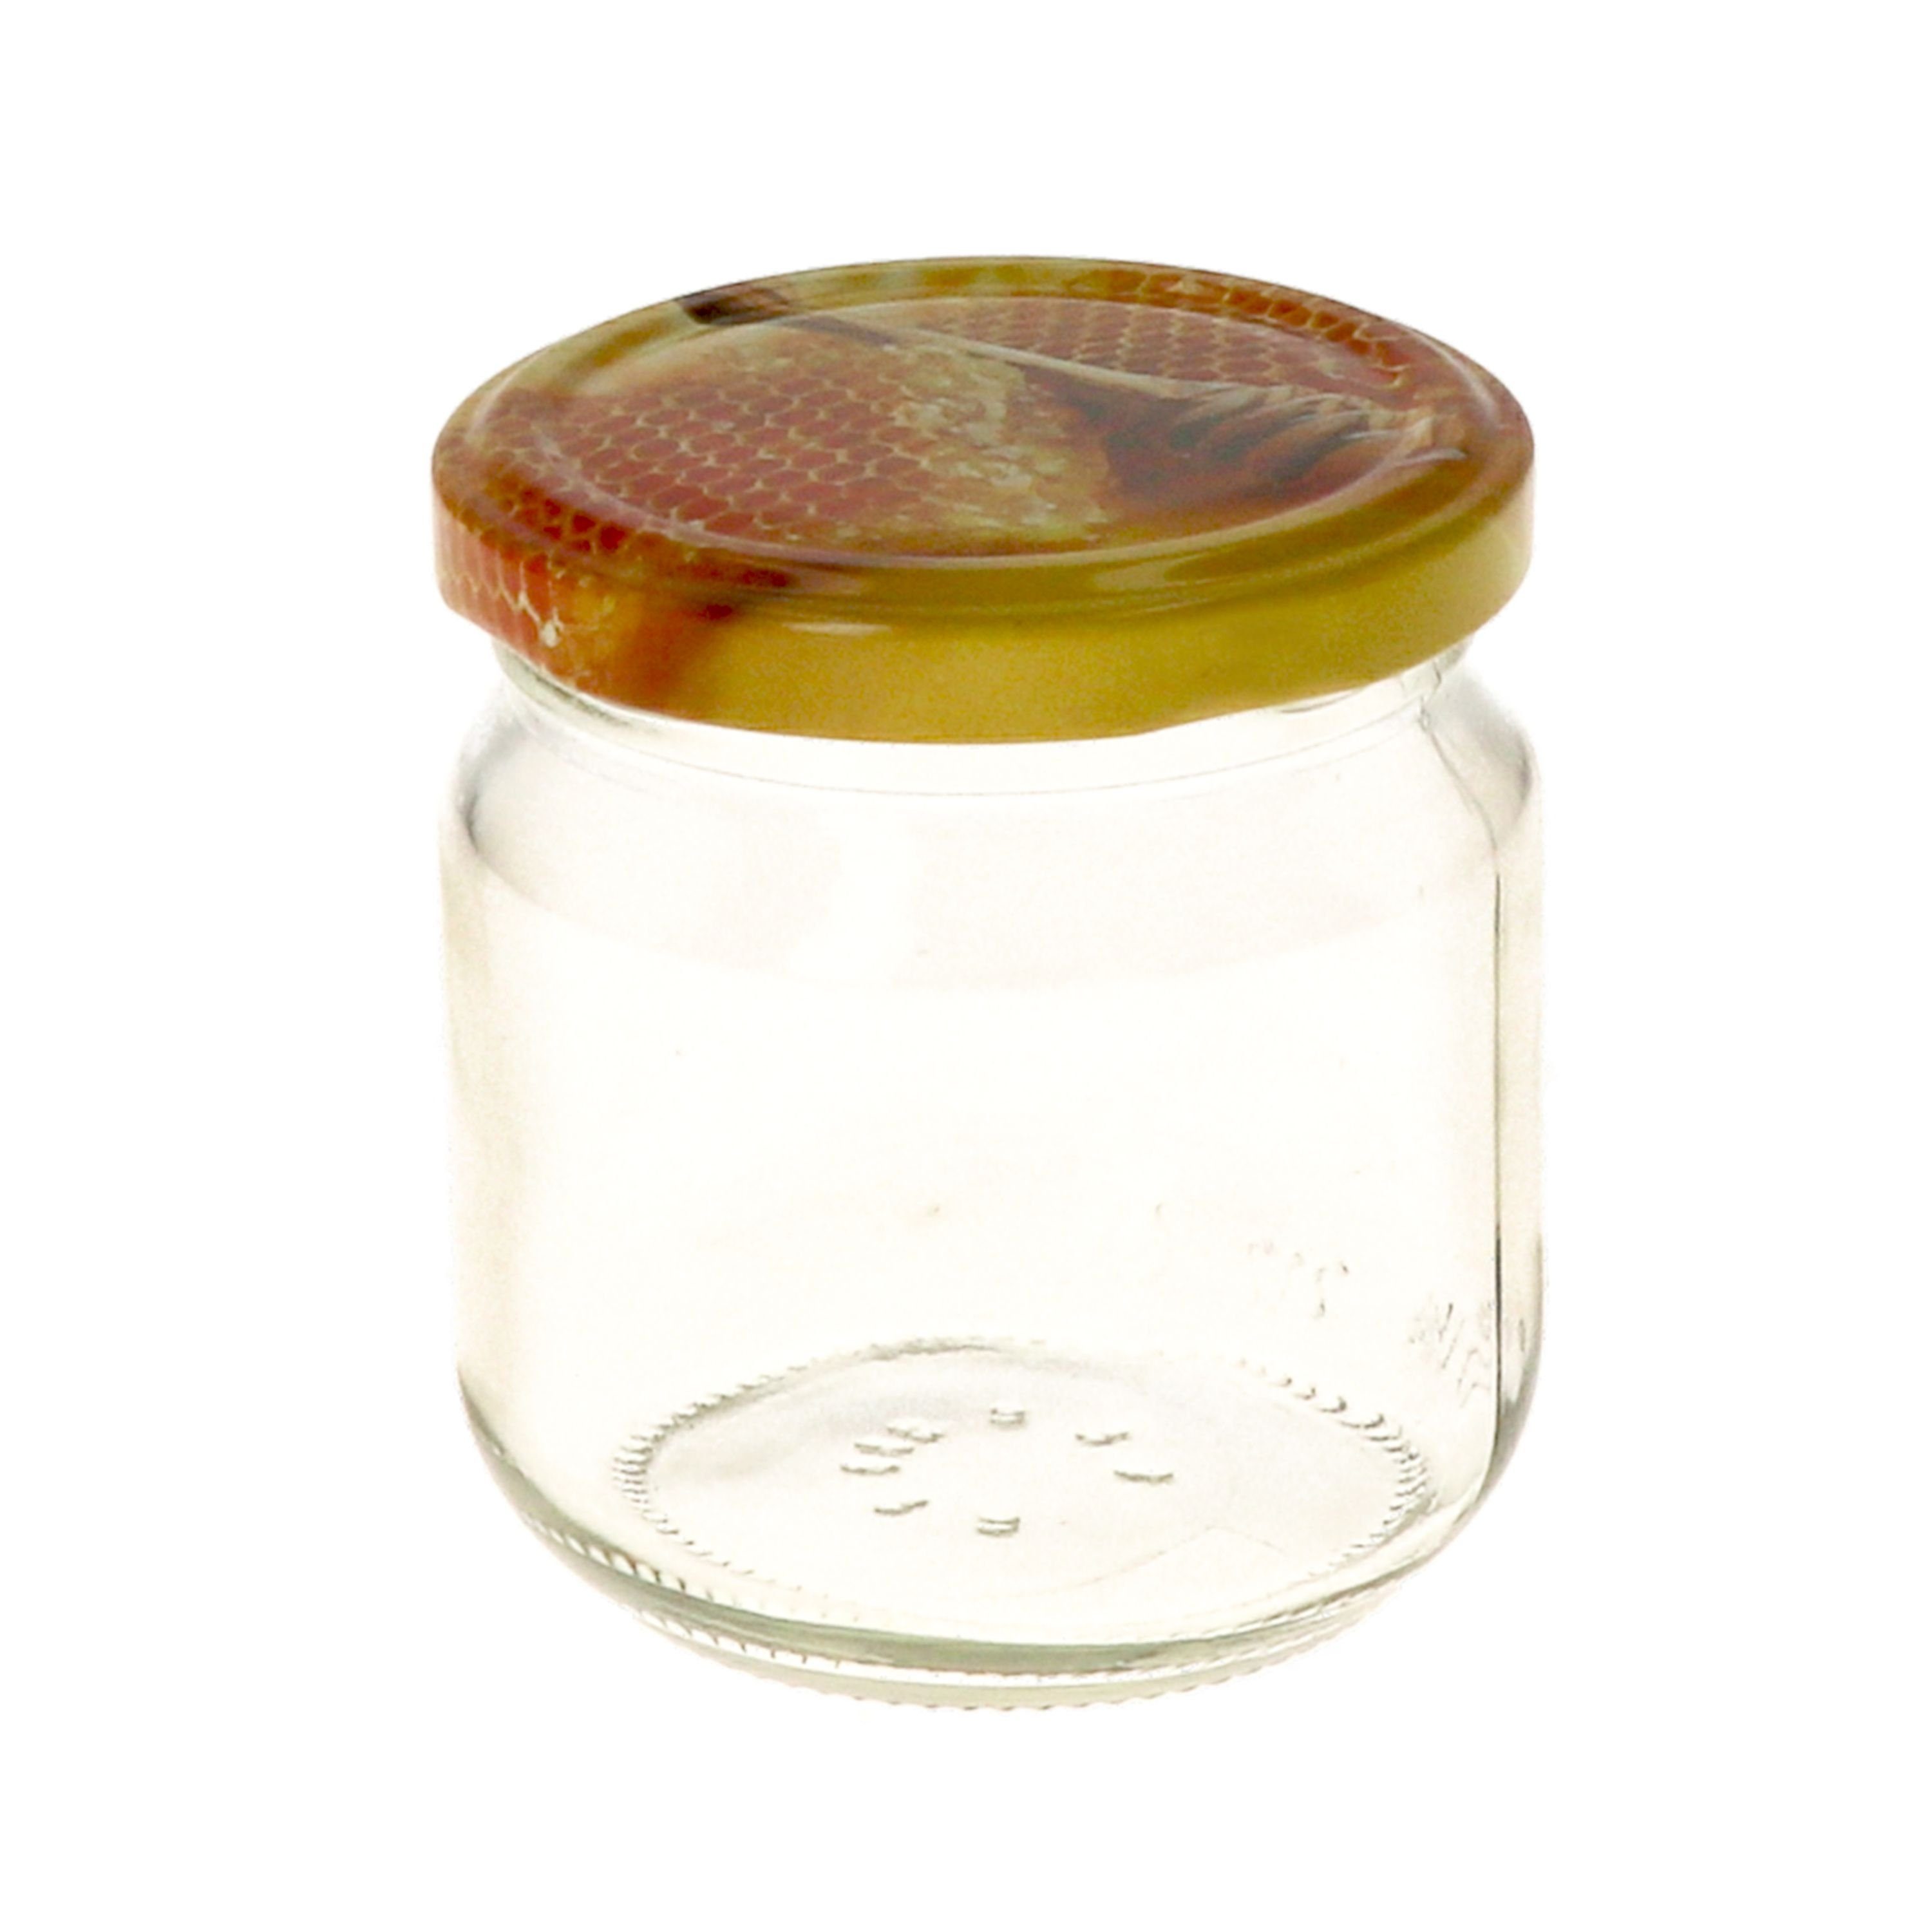 Honigwabe Rezeptheft, Rundglas Carino MamboCat 212 nieder 24er mit ml Deckel Einmachglas Set Glas